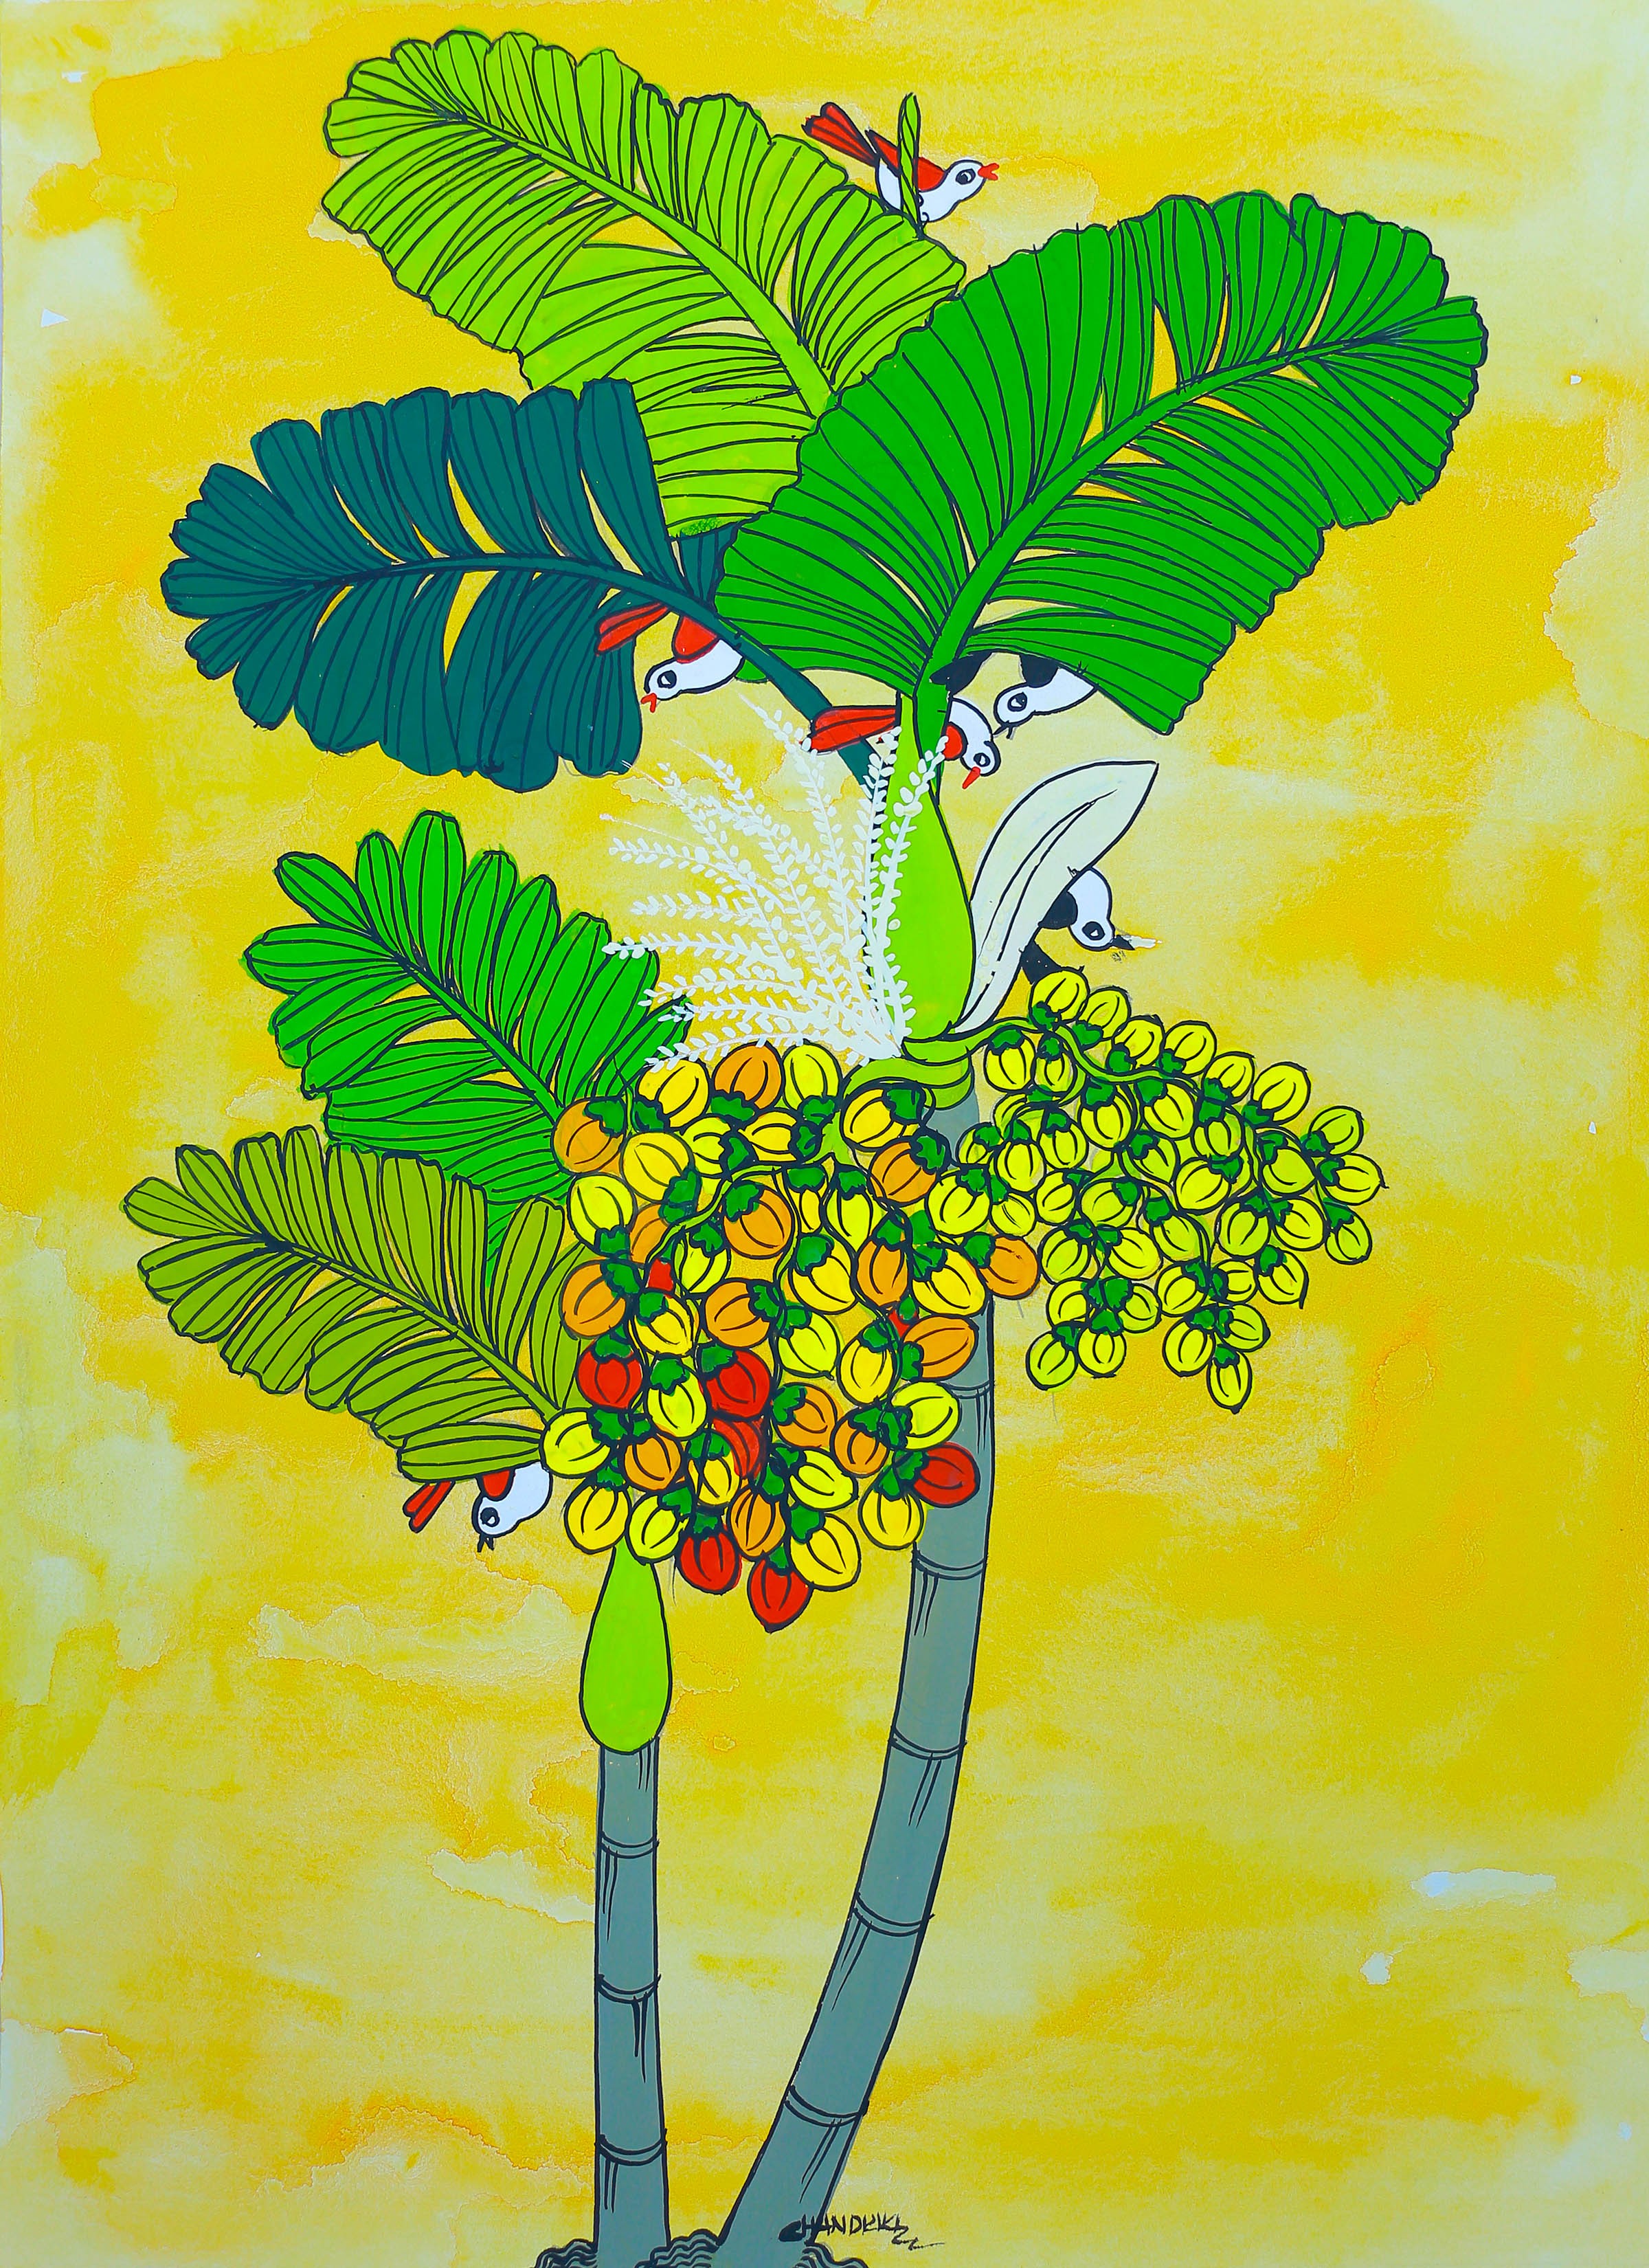 Areca Nut Tree by Chandrika Shiromani